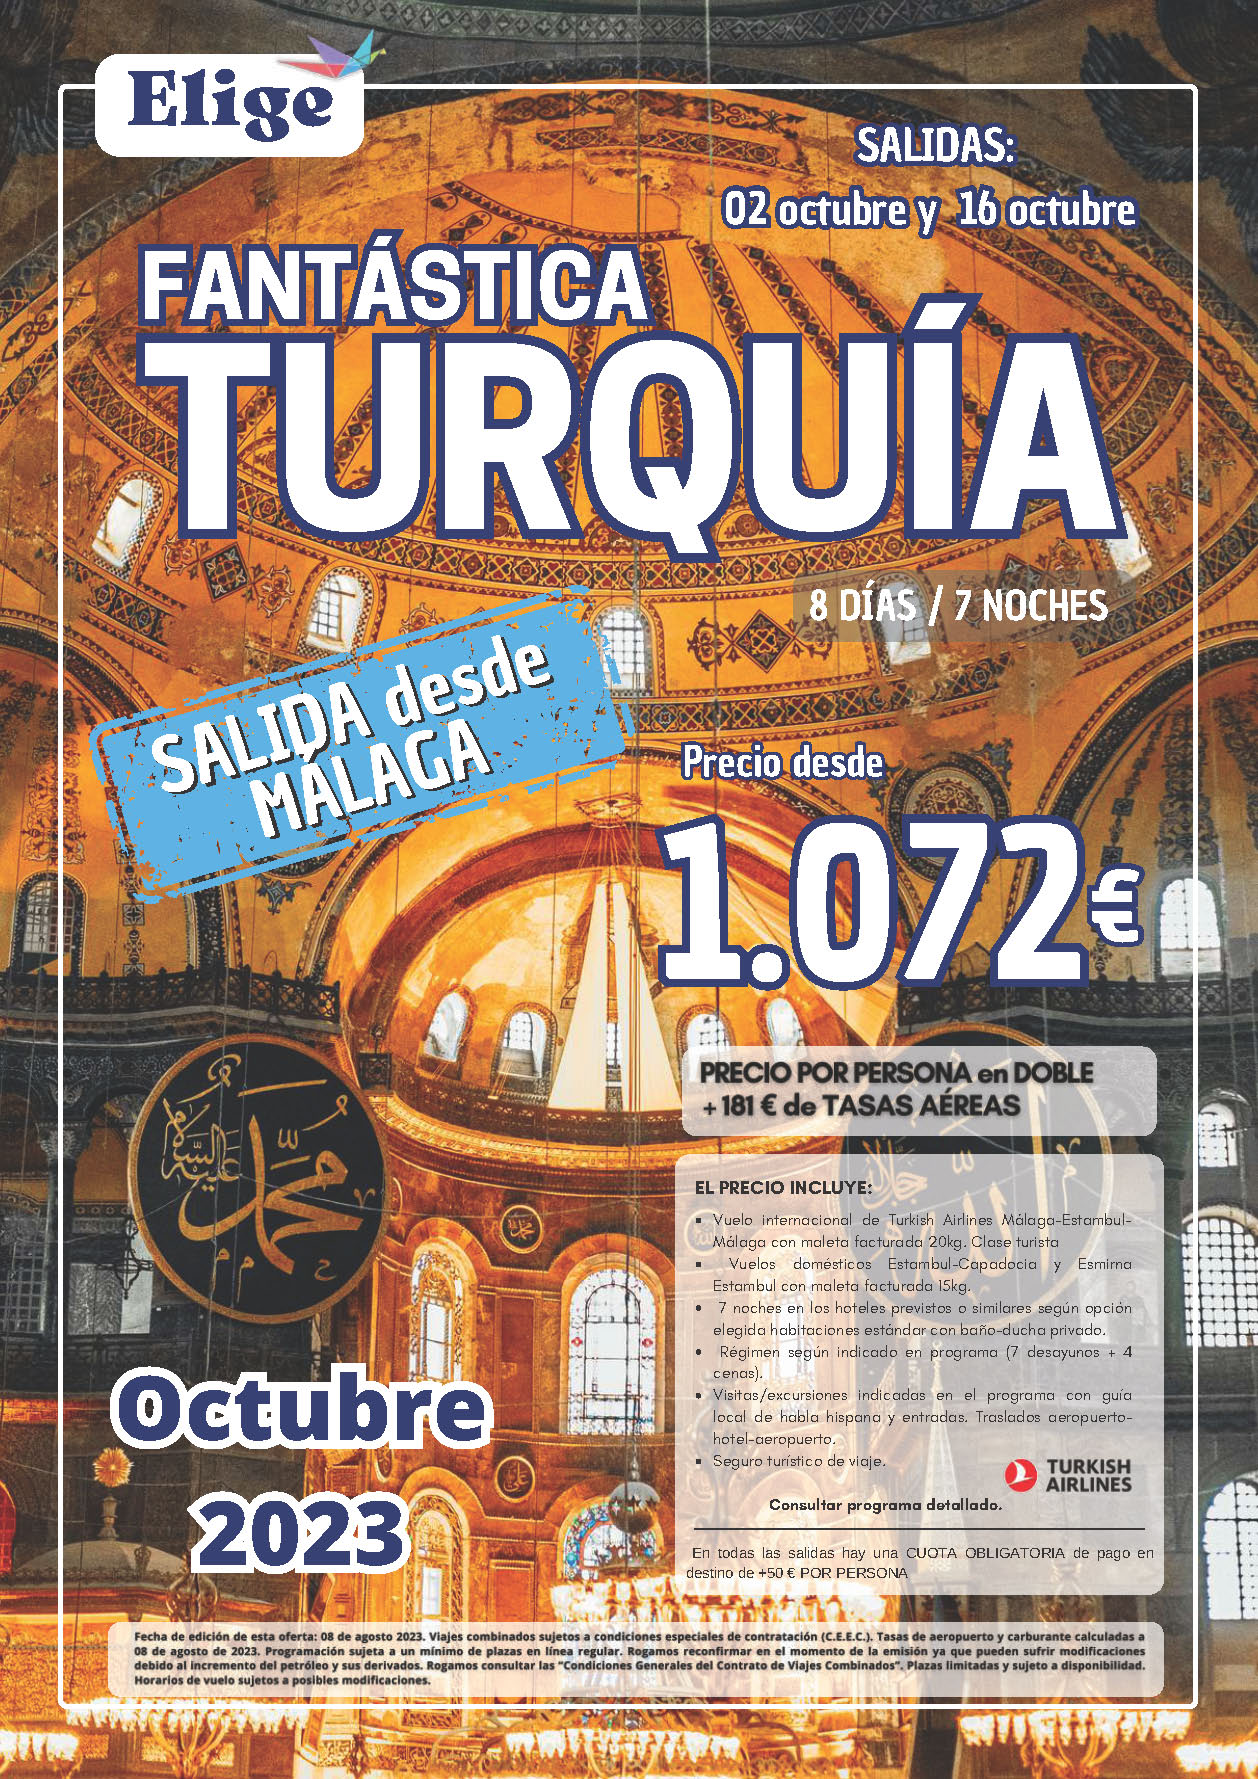 Oferta Elige tu Viaje circuito Fantastica Turquia 8 dias salidas Octubre 2023 desde Malaga vuelos Turkish Airlines